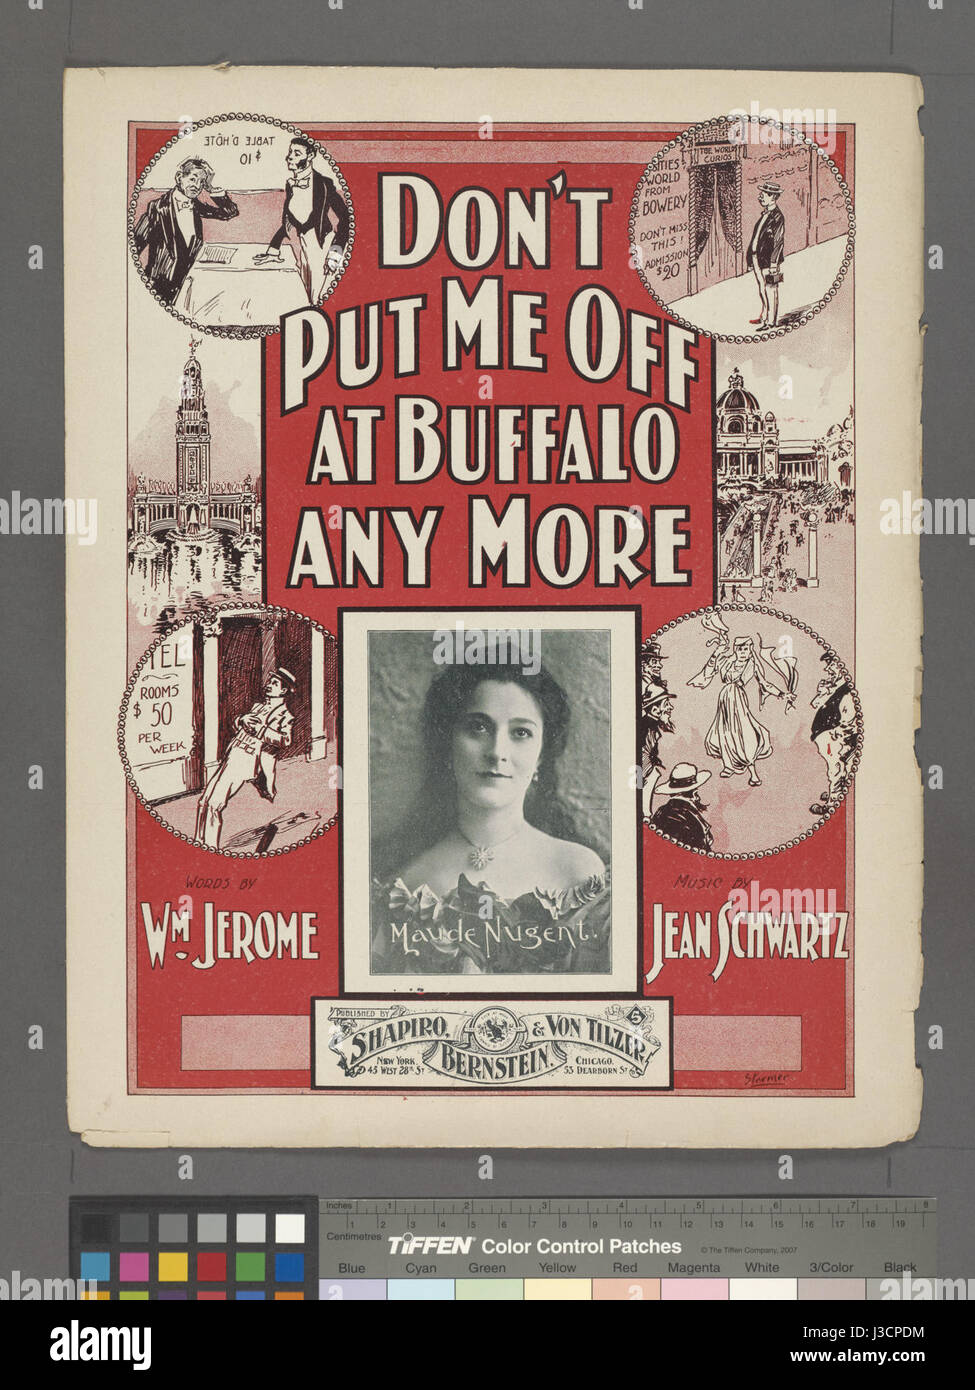 Non mettere me off a Buffalo qualunque; parole da William Jerome; musica da Jean Schwartz (NYPL ADE 1926379 1954442) Foto Stock